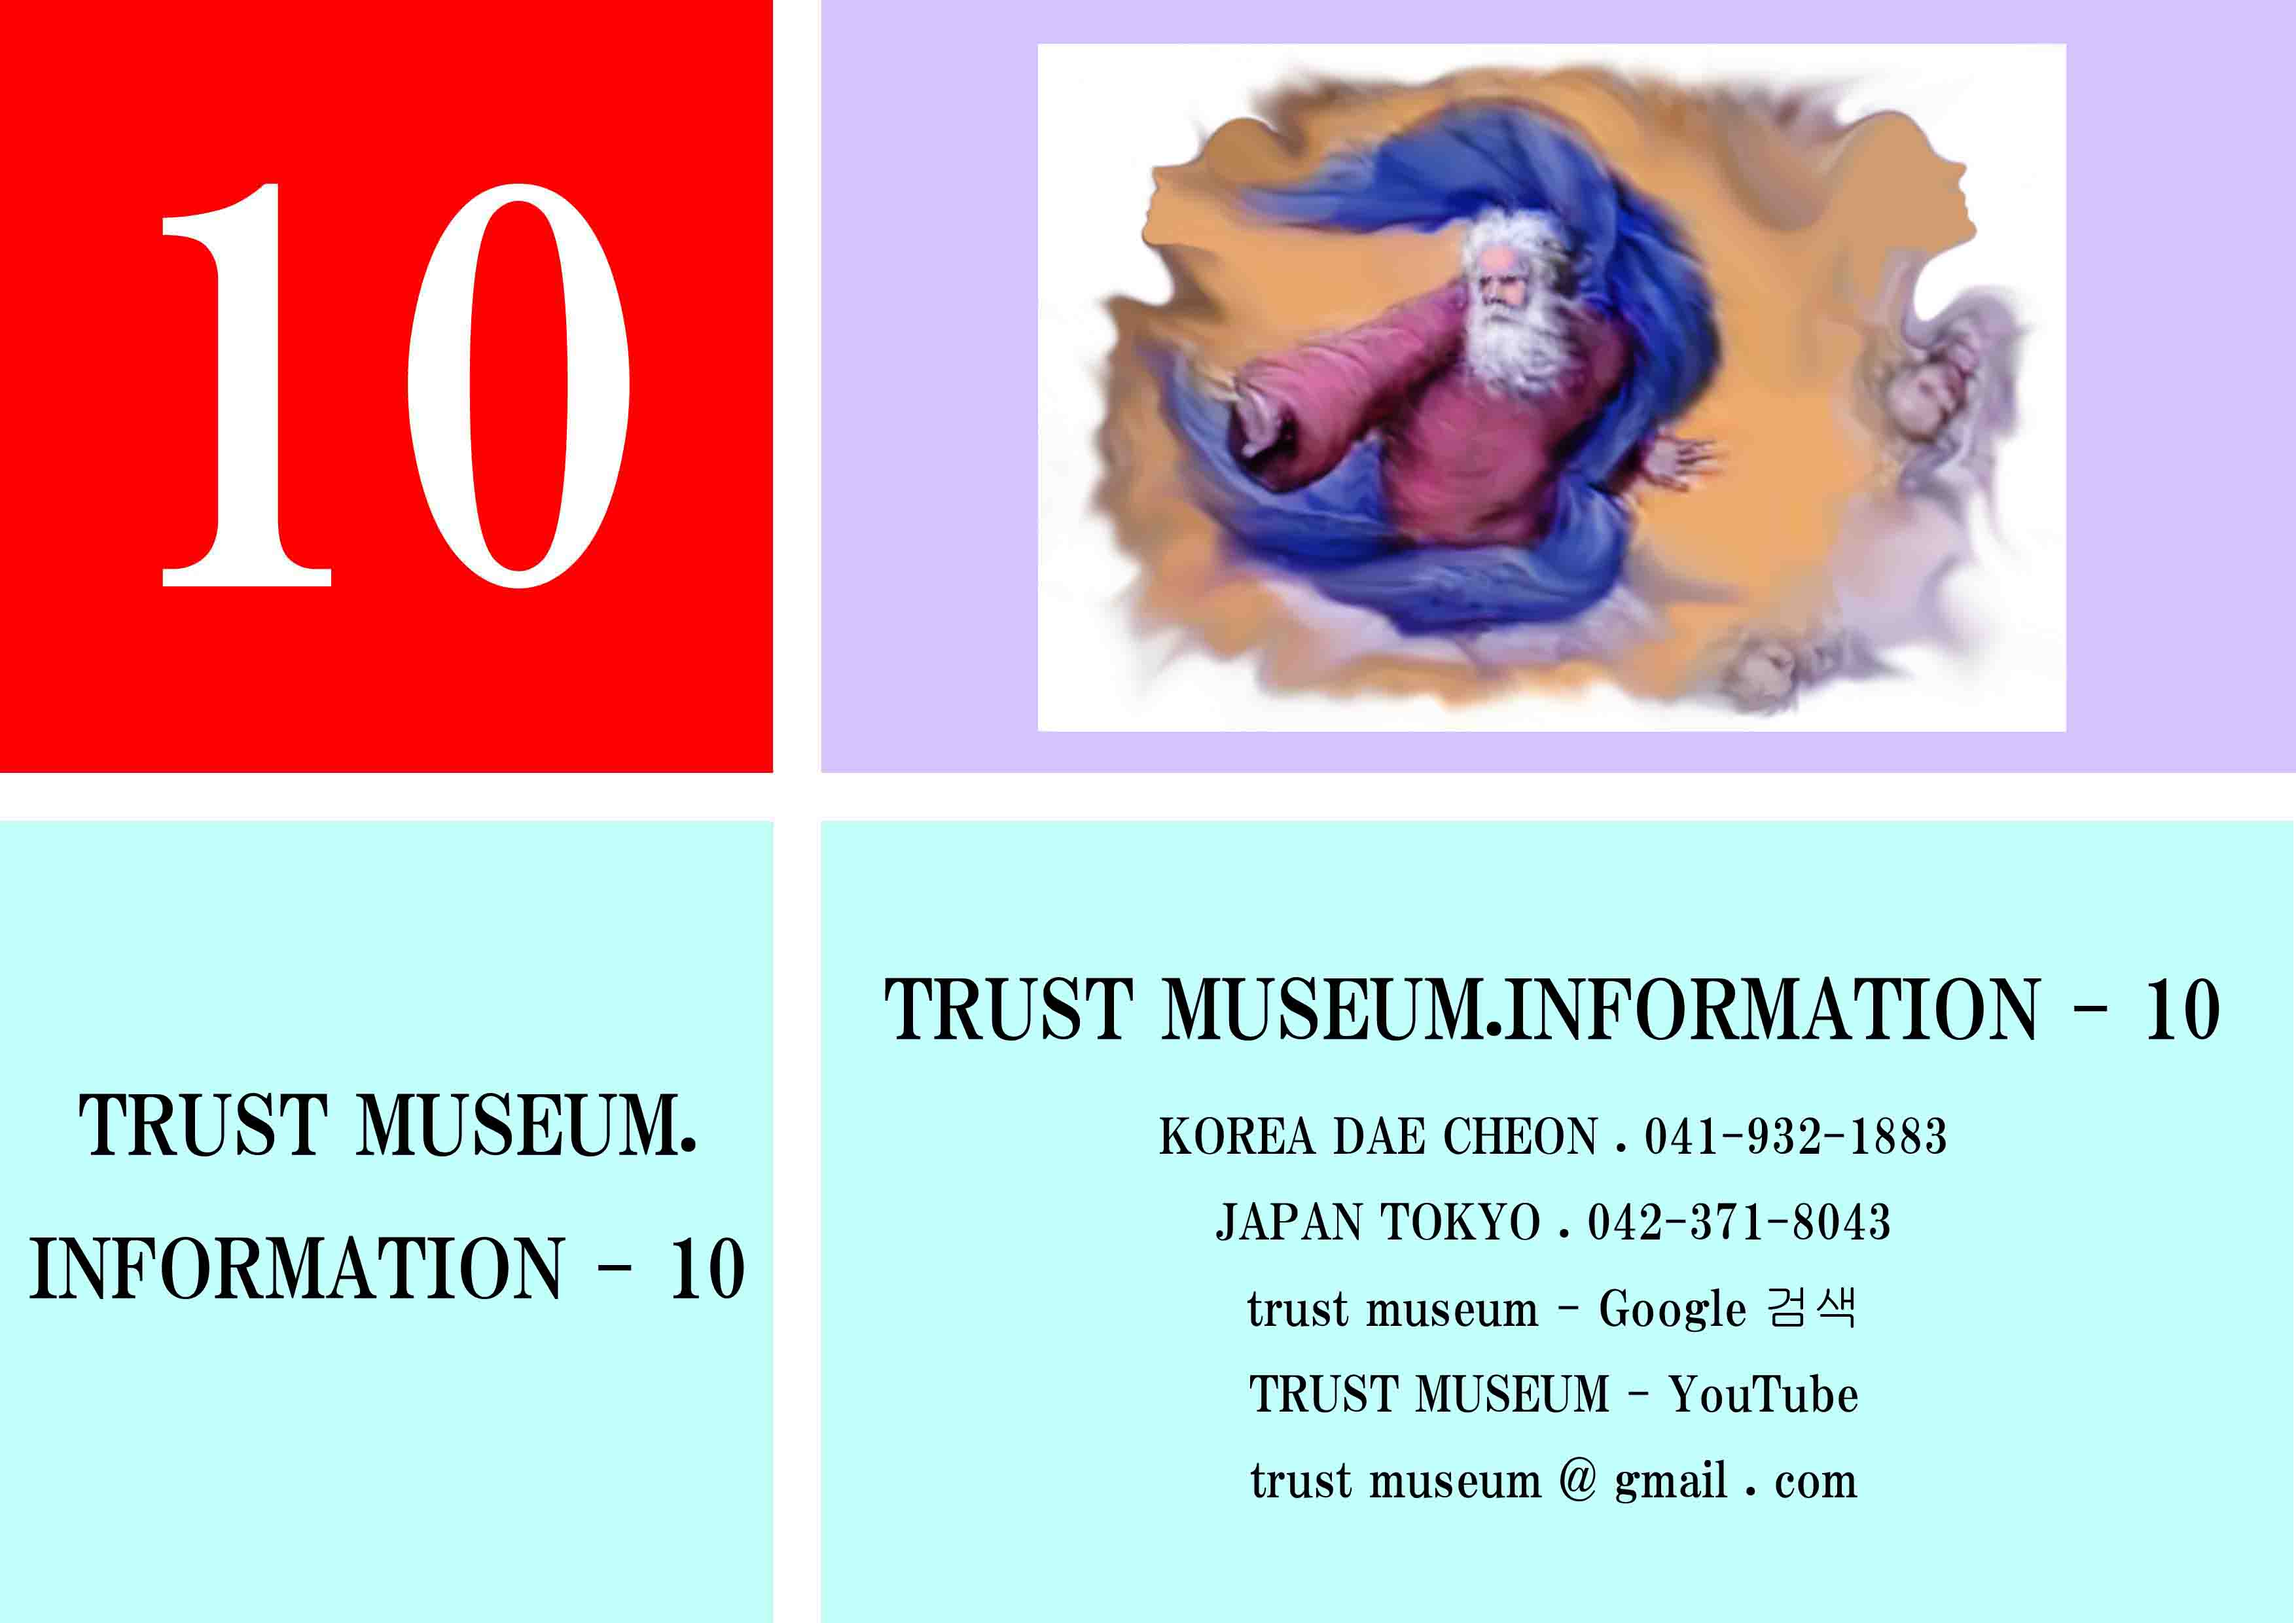 TRUST MUSEUM (10)